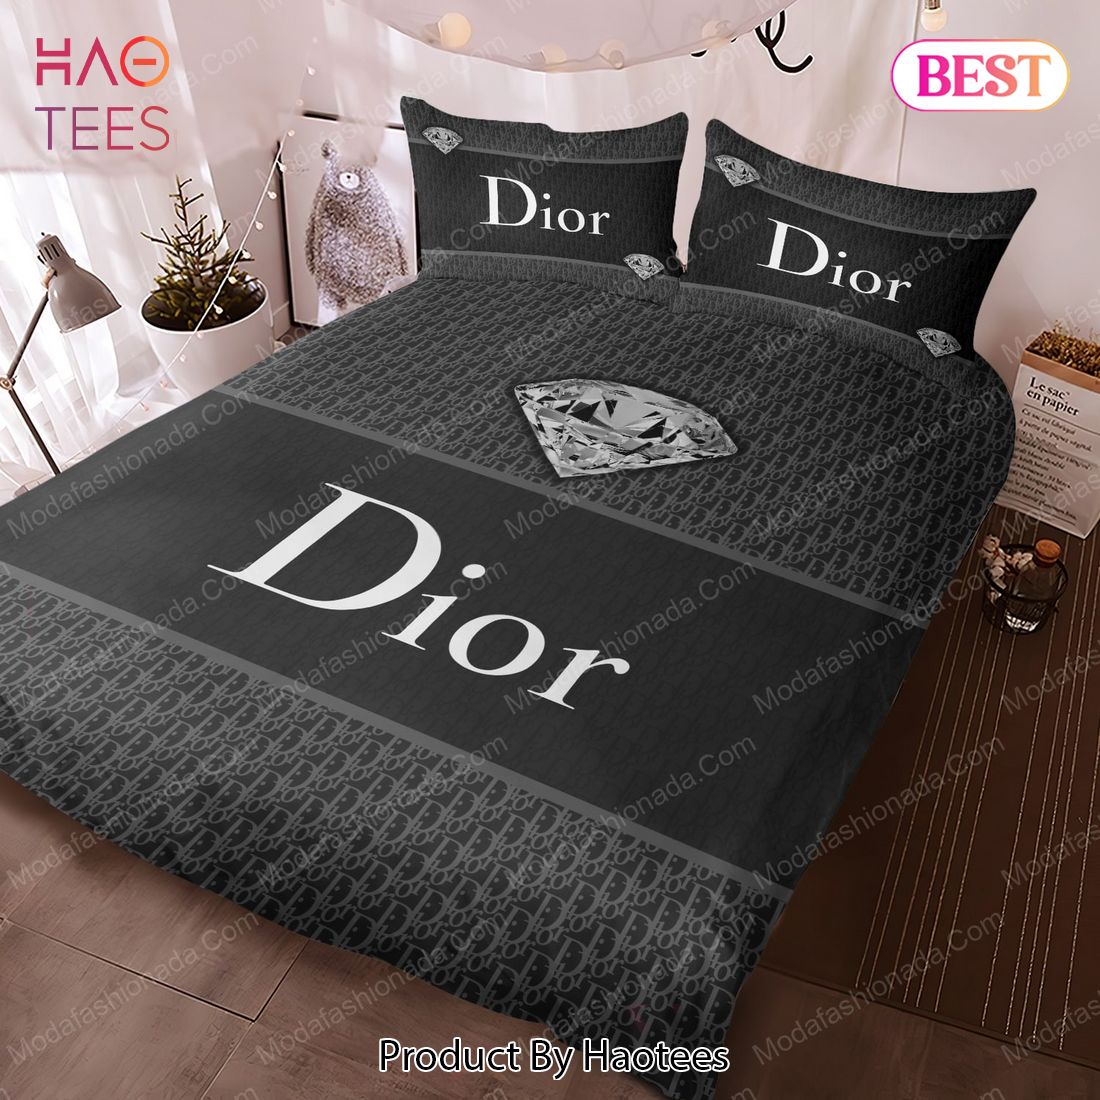 Buy Dior Bedding Sets Bed Sets, Bedroom Sets, Comforter Sets, Duvet Cover, Bedspread